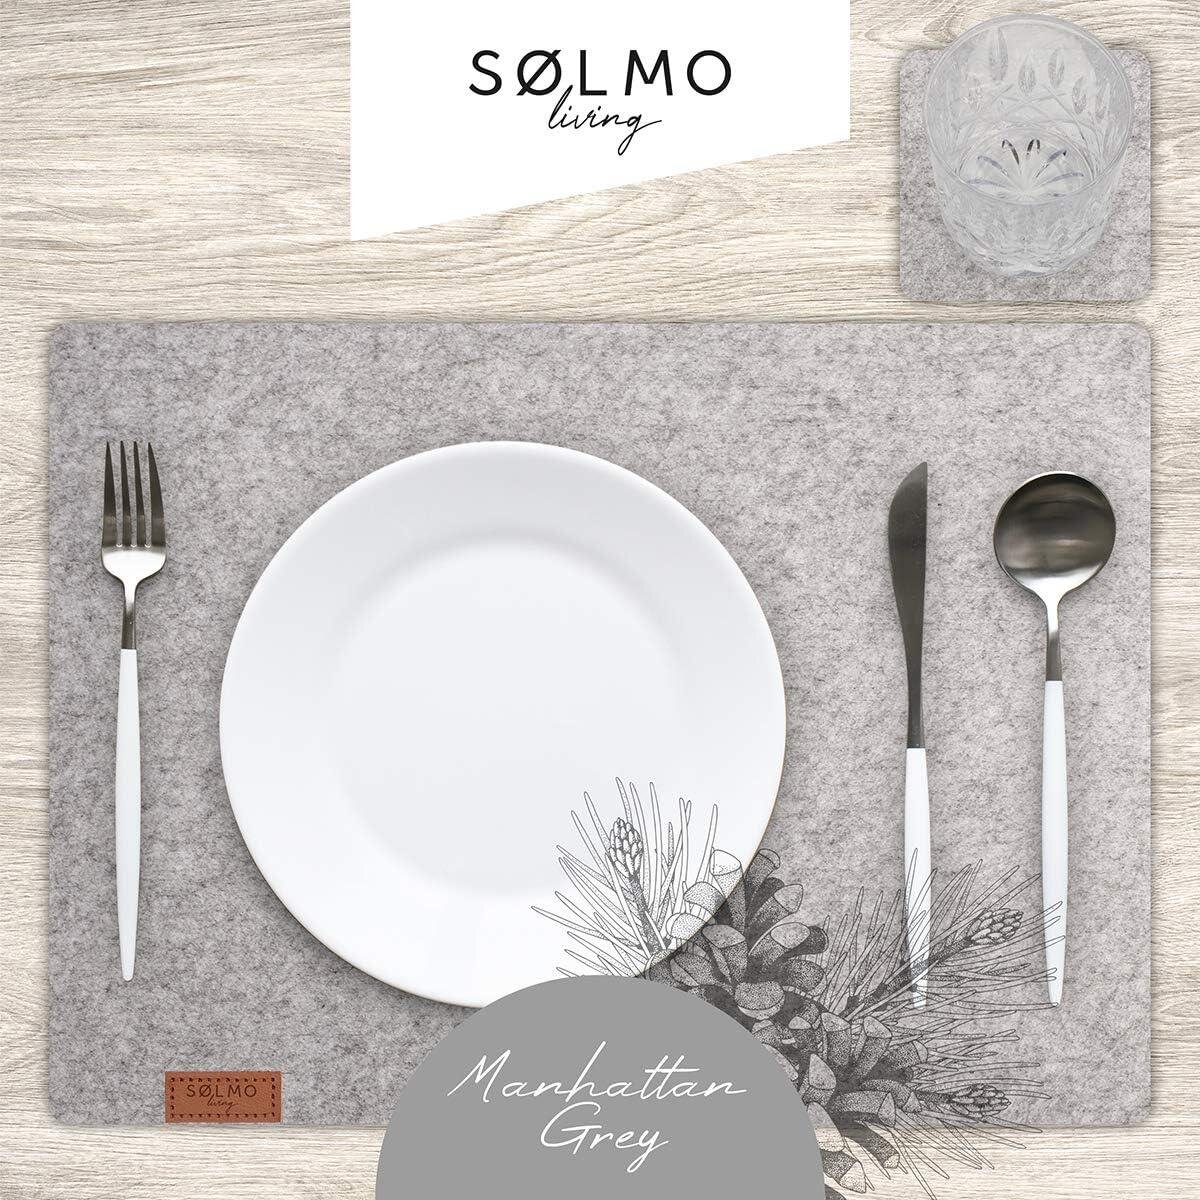 sølmo I 12er Premium Platzsets aus Filz, 42x32 cm, Manhatten Grey - B-Ware  sehr gut, 7,99 €